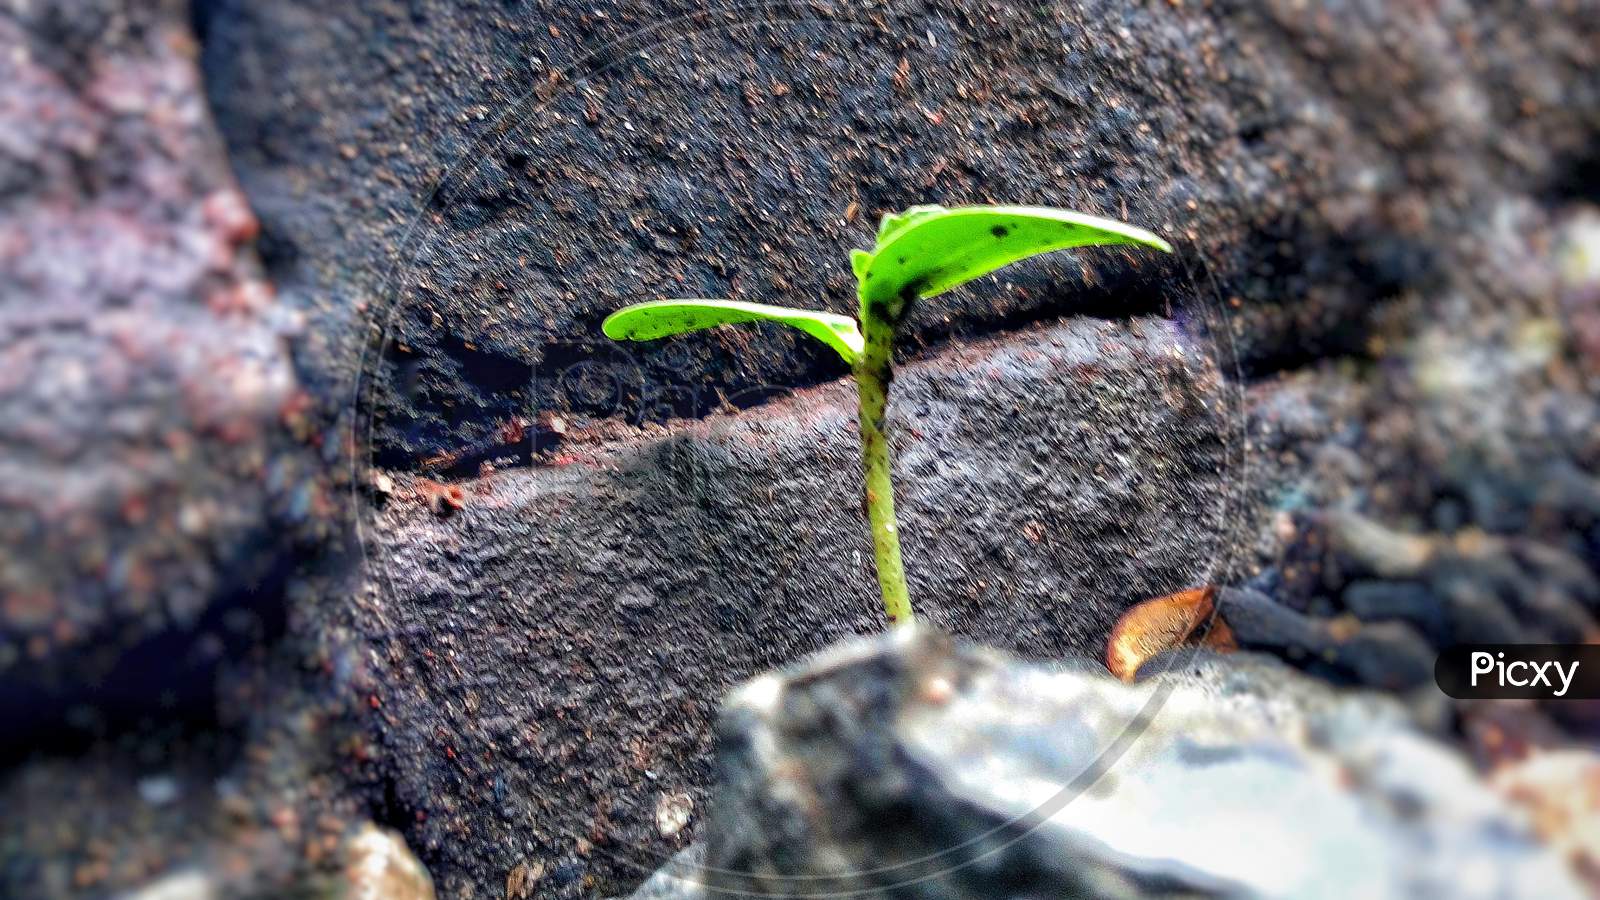 Small plant in rainy season